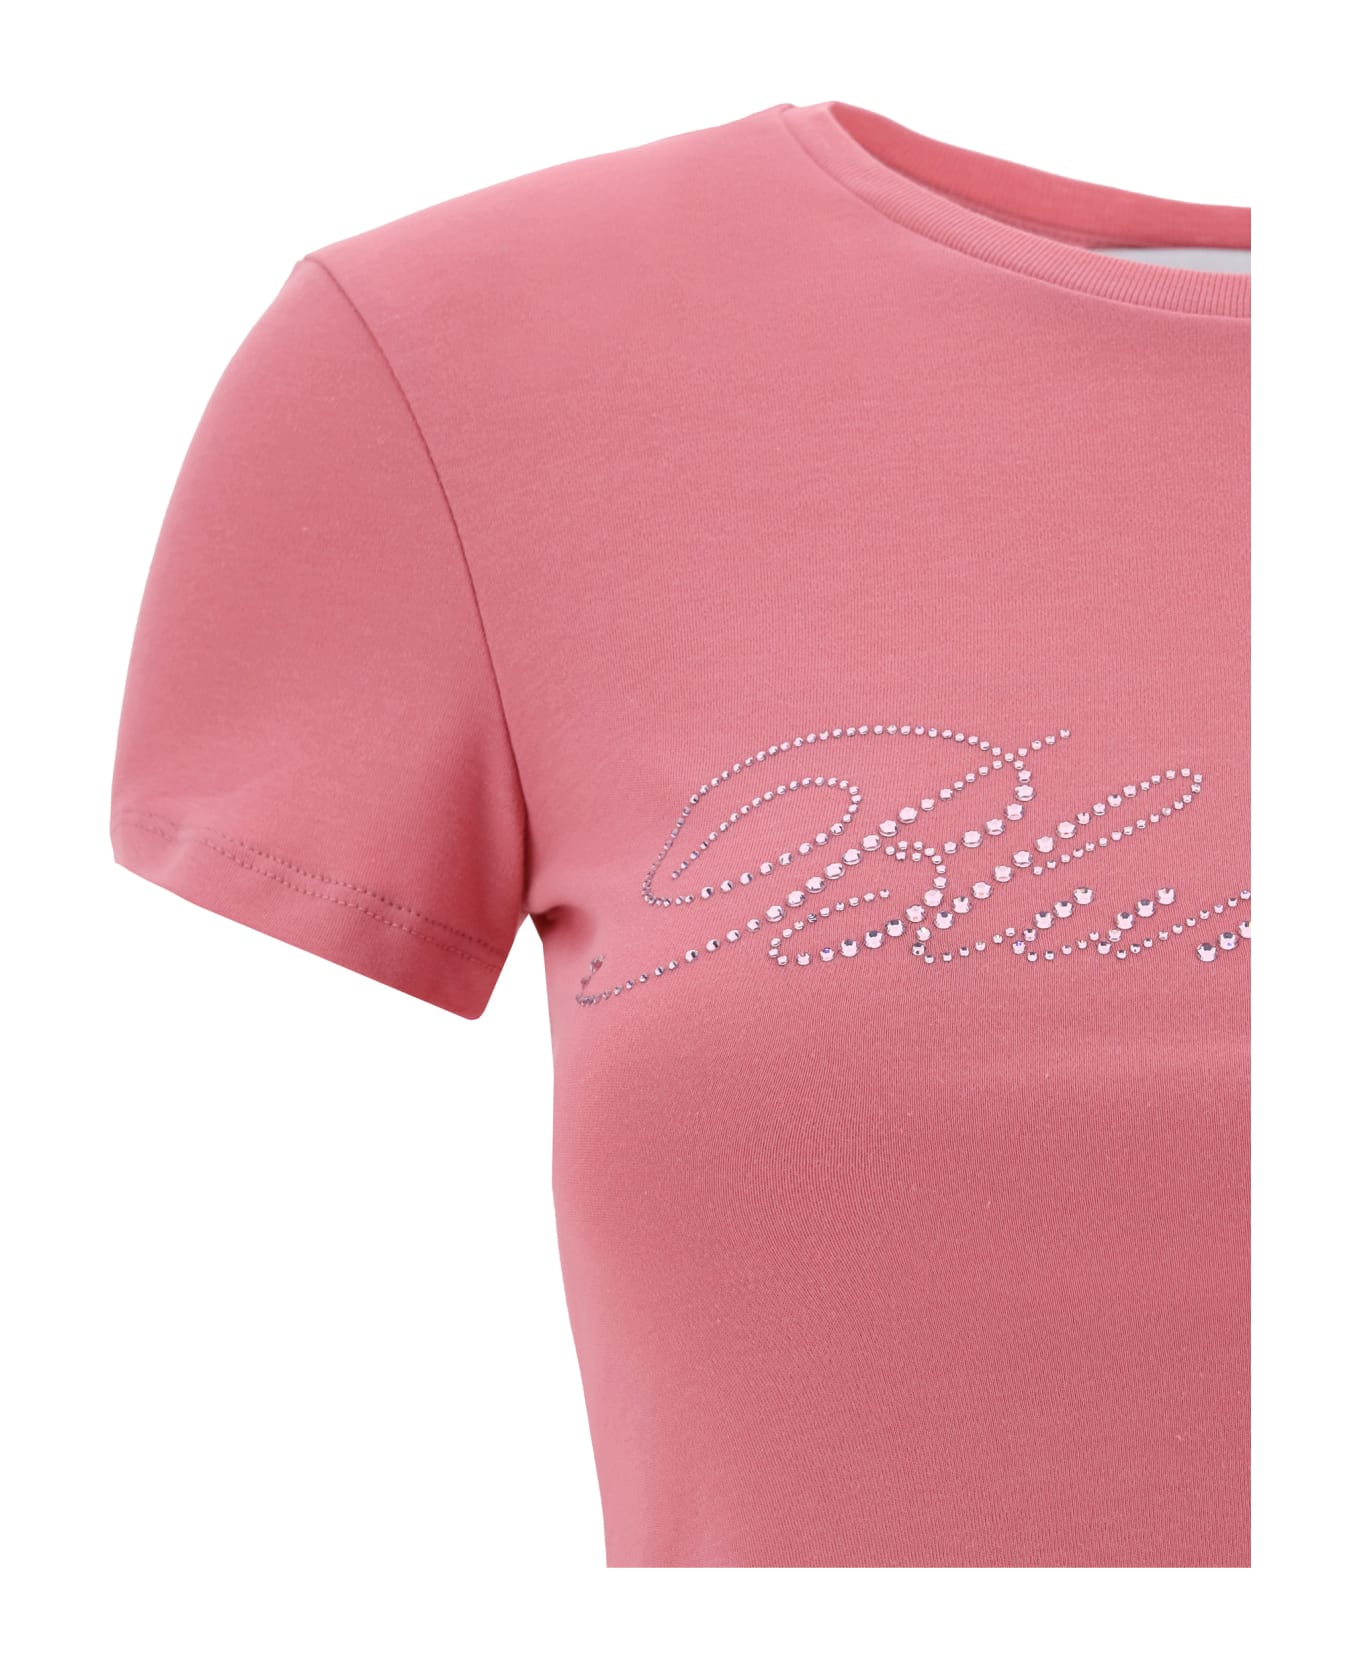 Blumarine T-shirt - Bubblegum Tシャツ